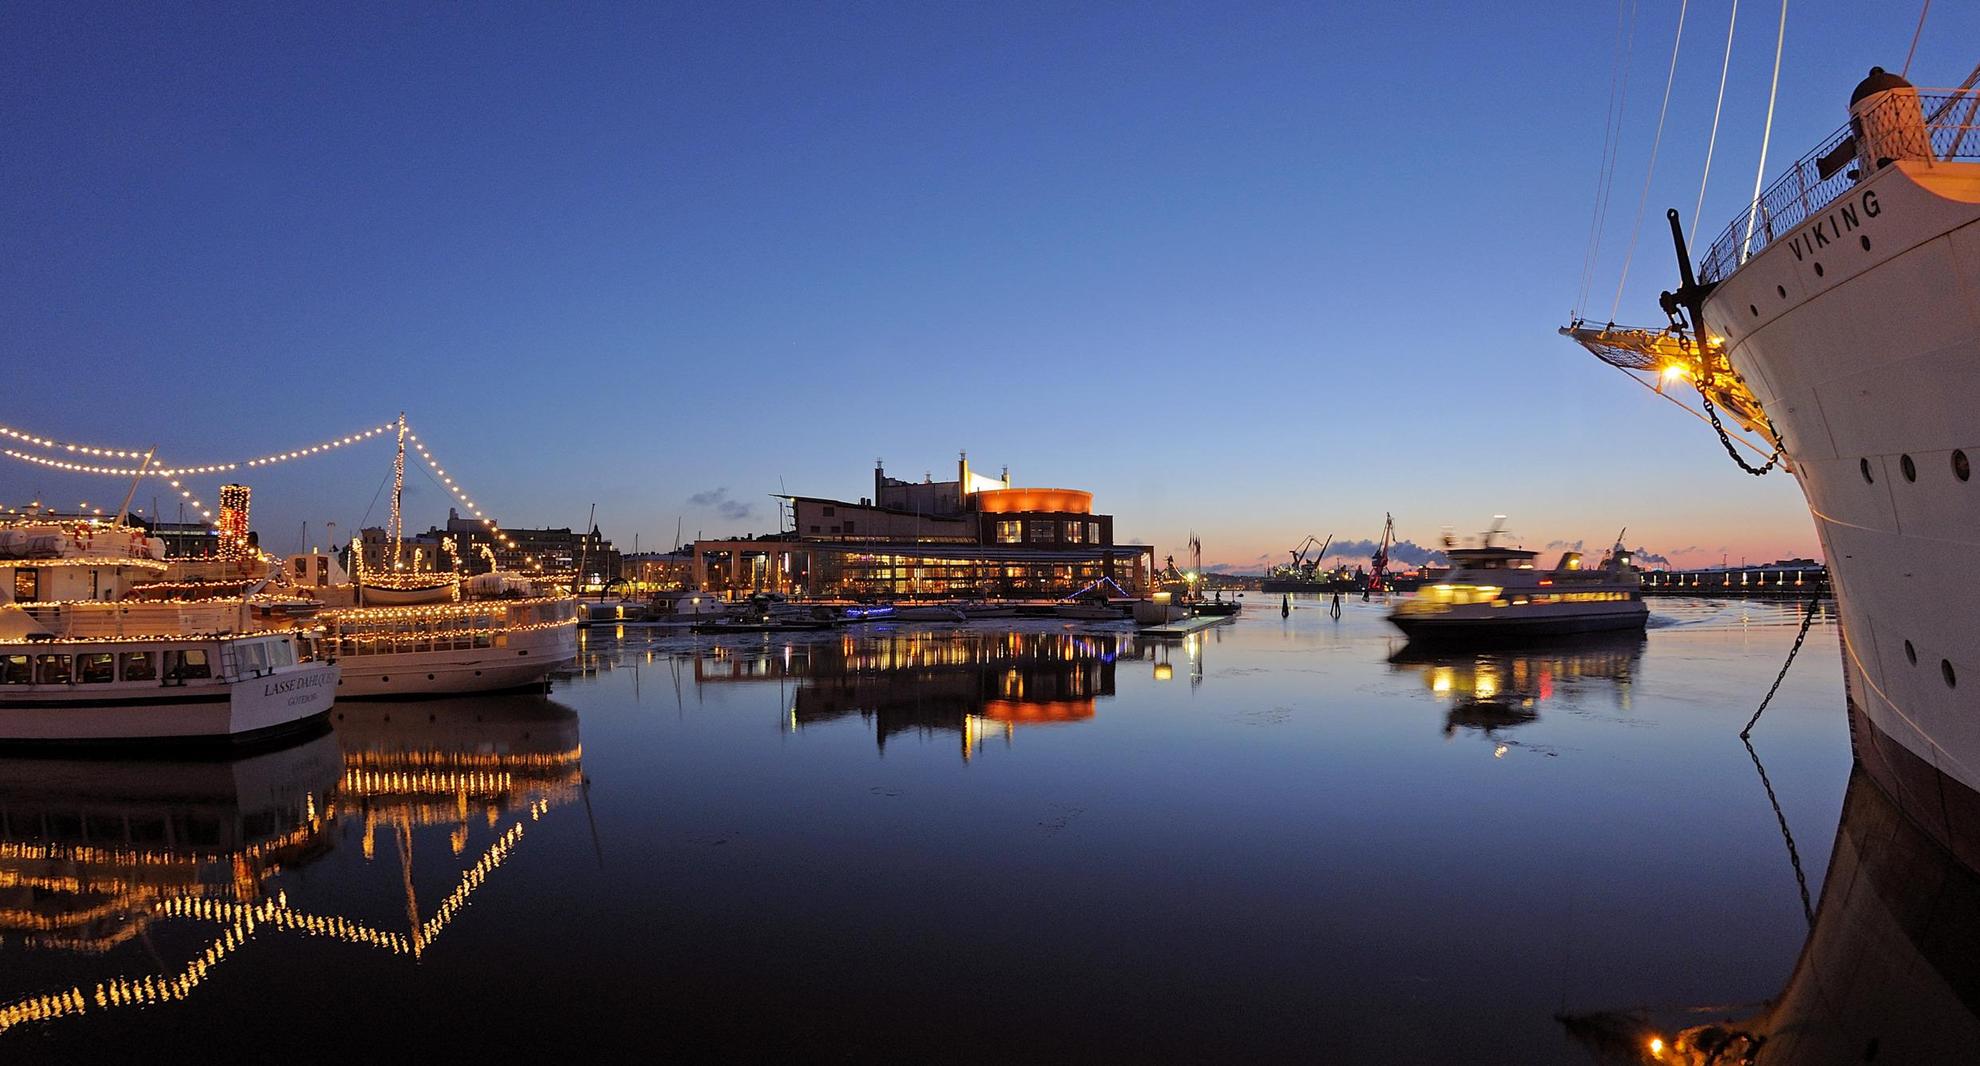 C'est le crépuscule dans le port de Göteborg où de grands bateaux avec des mâts lumineux sont amarrés.